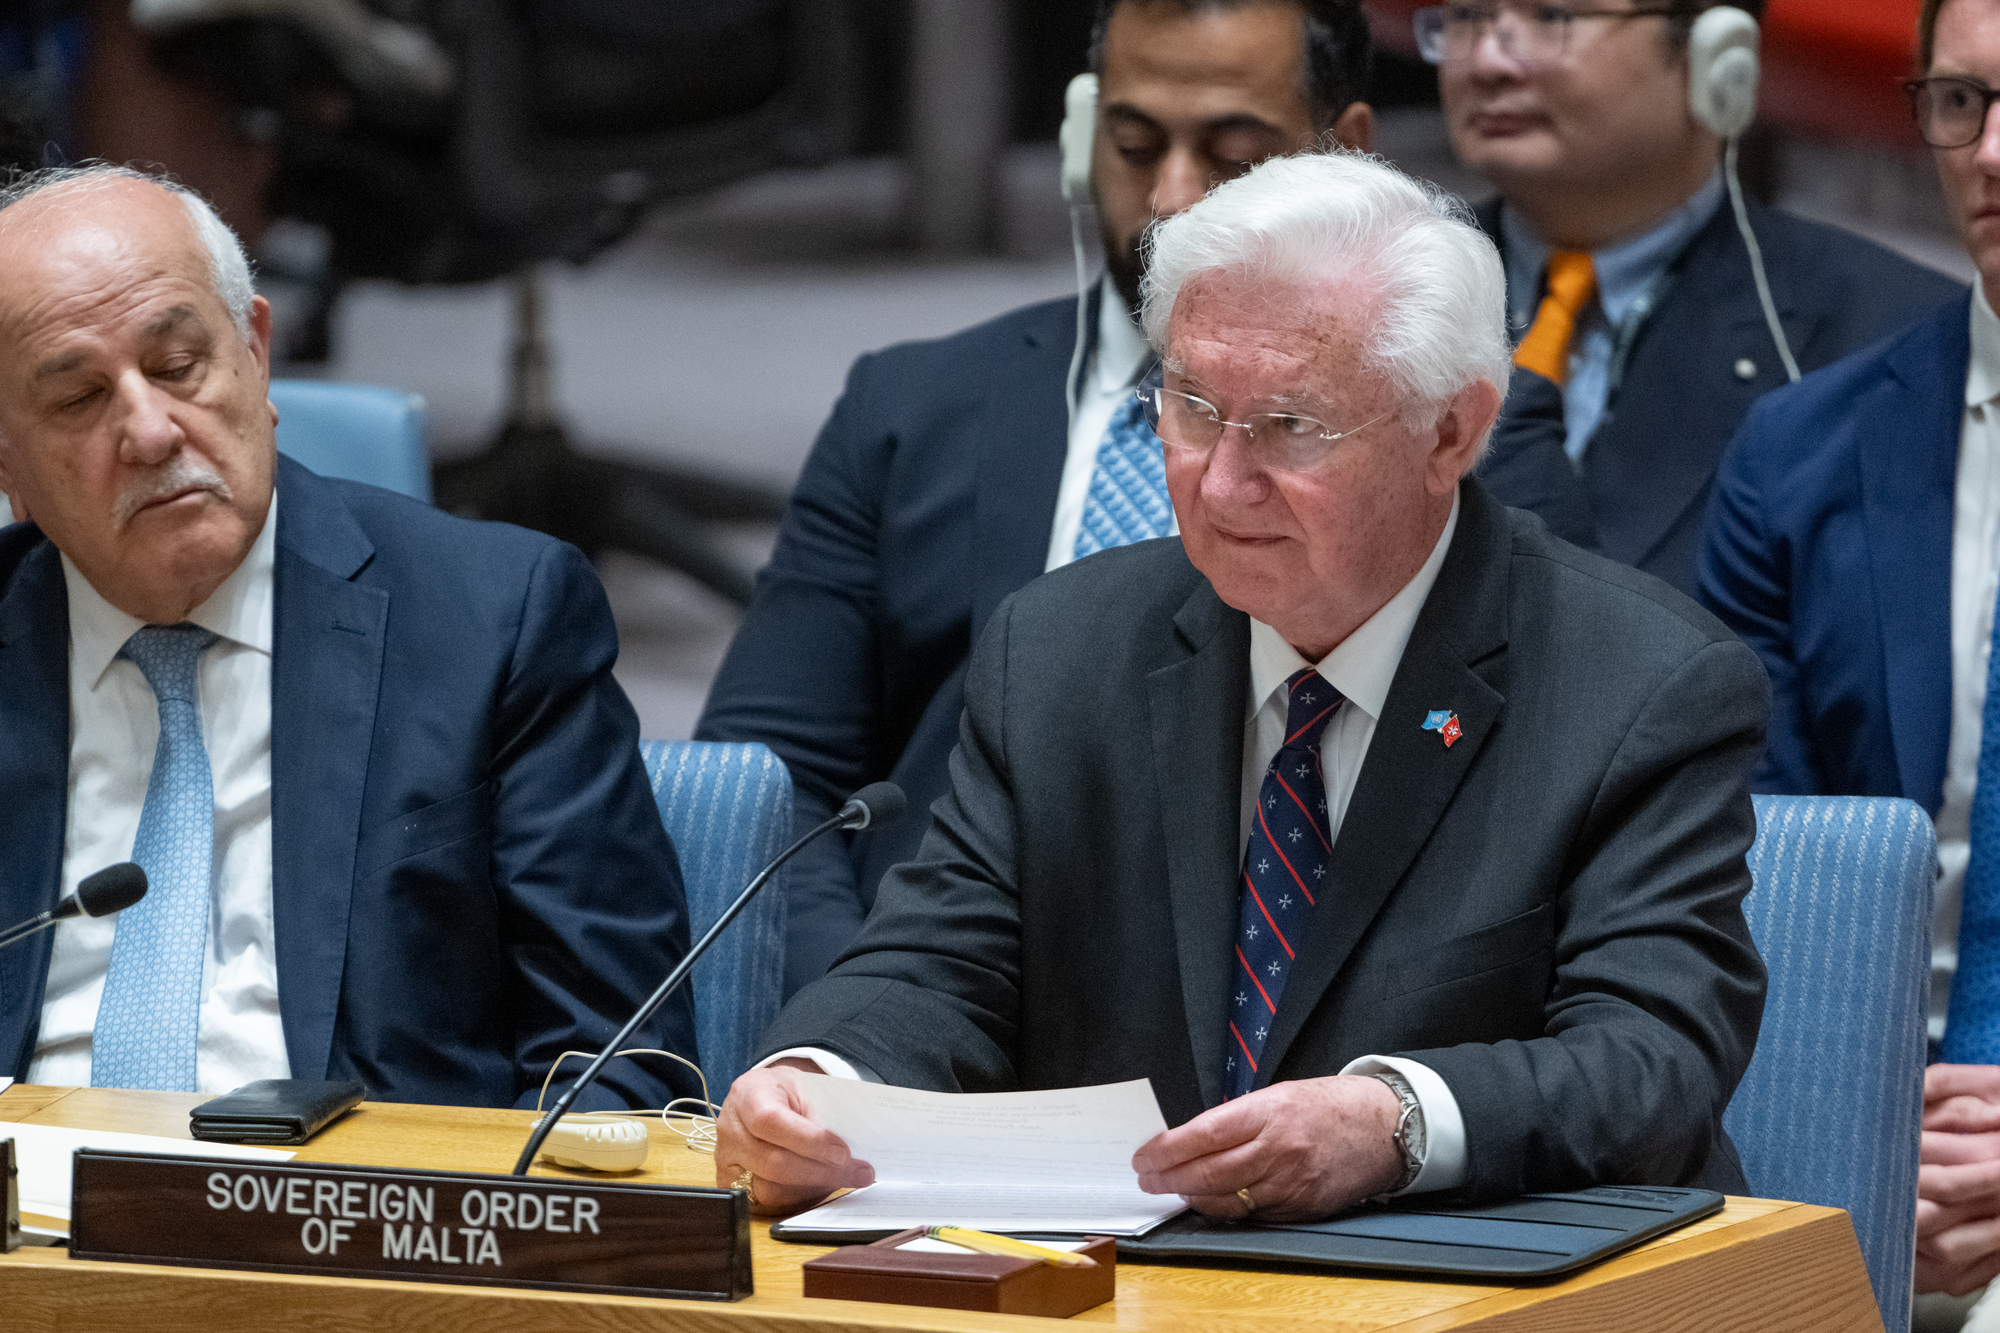 L’Ambasciatore dell’Ordine di Malta presso le Nazioni Unite interviene al Consiglio di Sicurezza